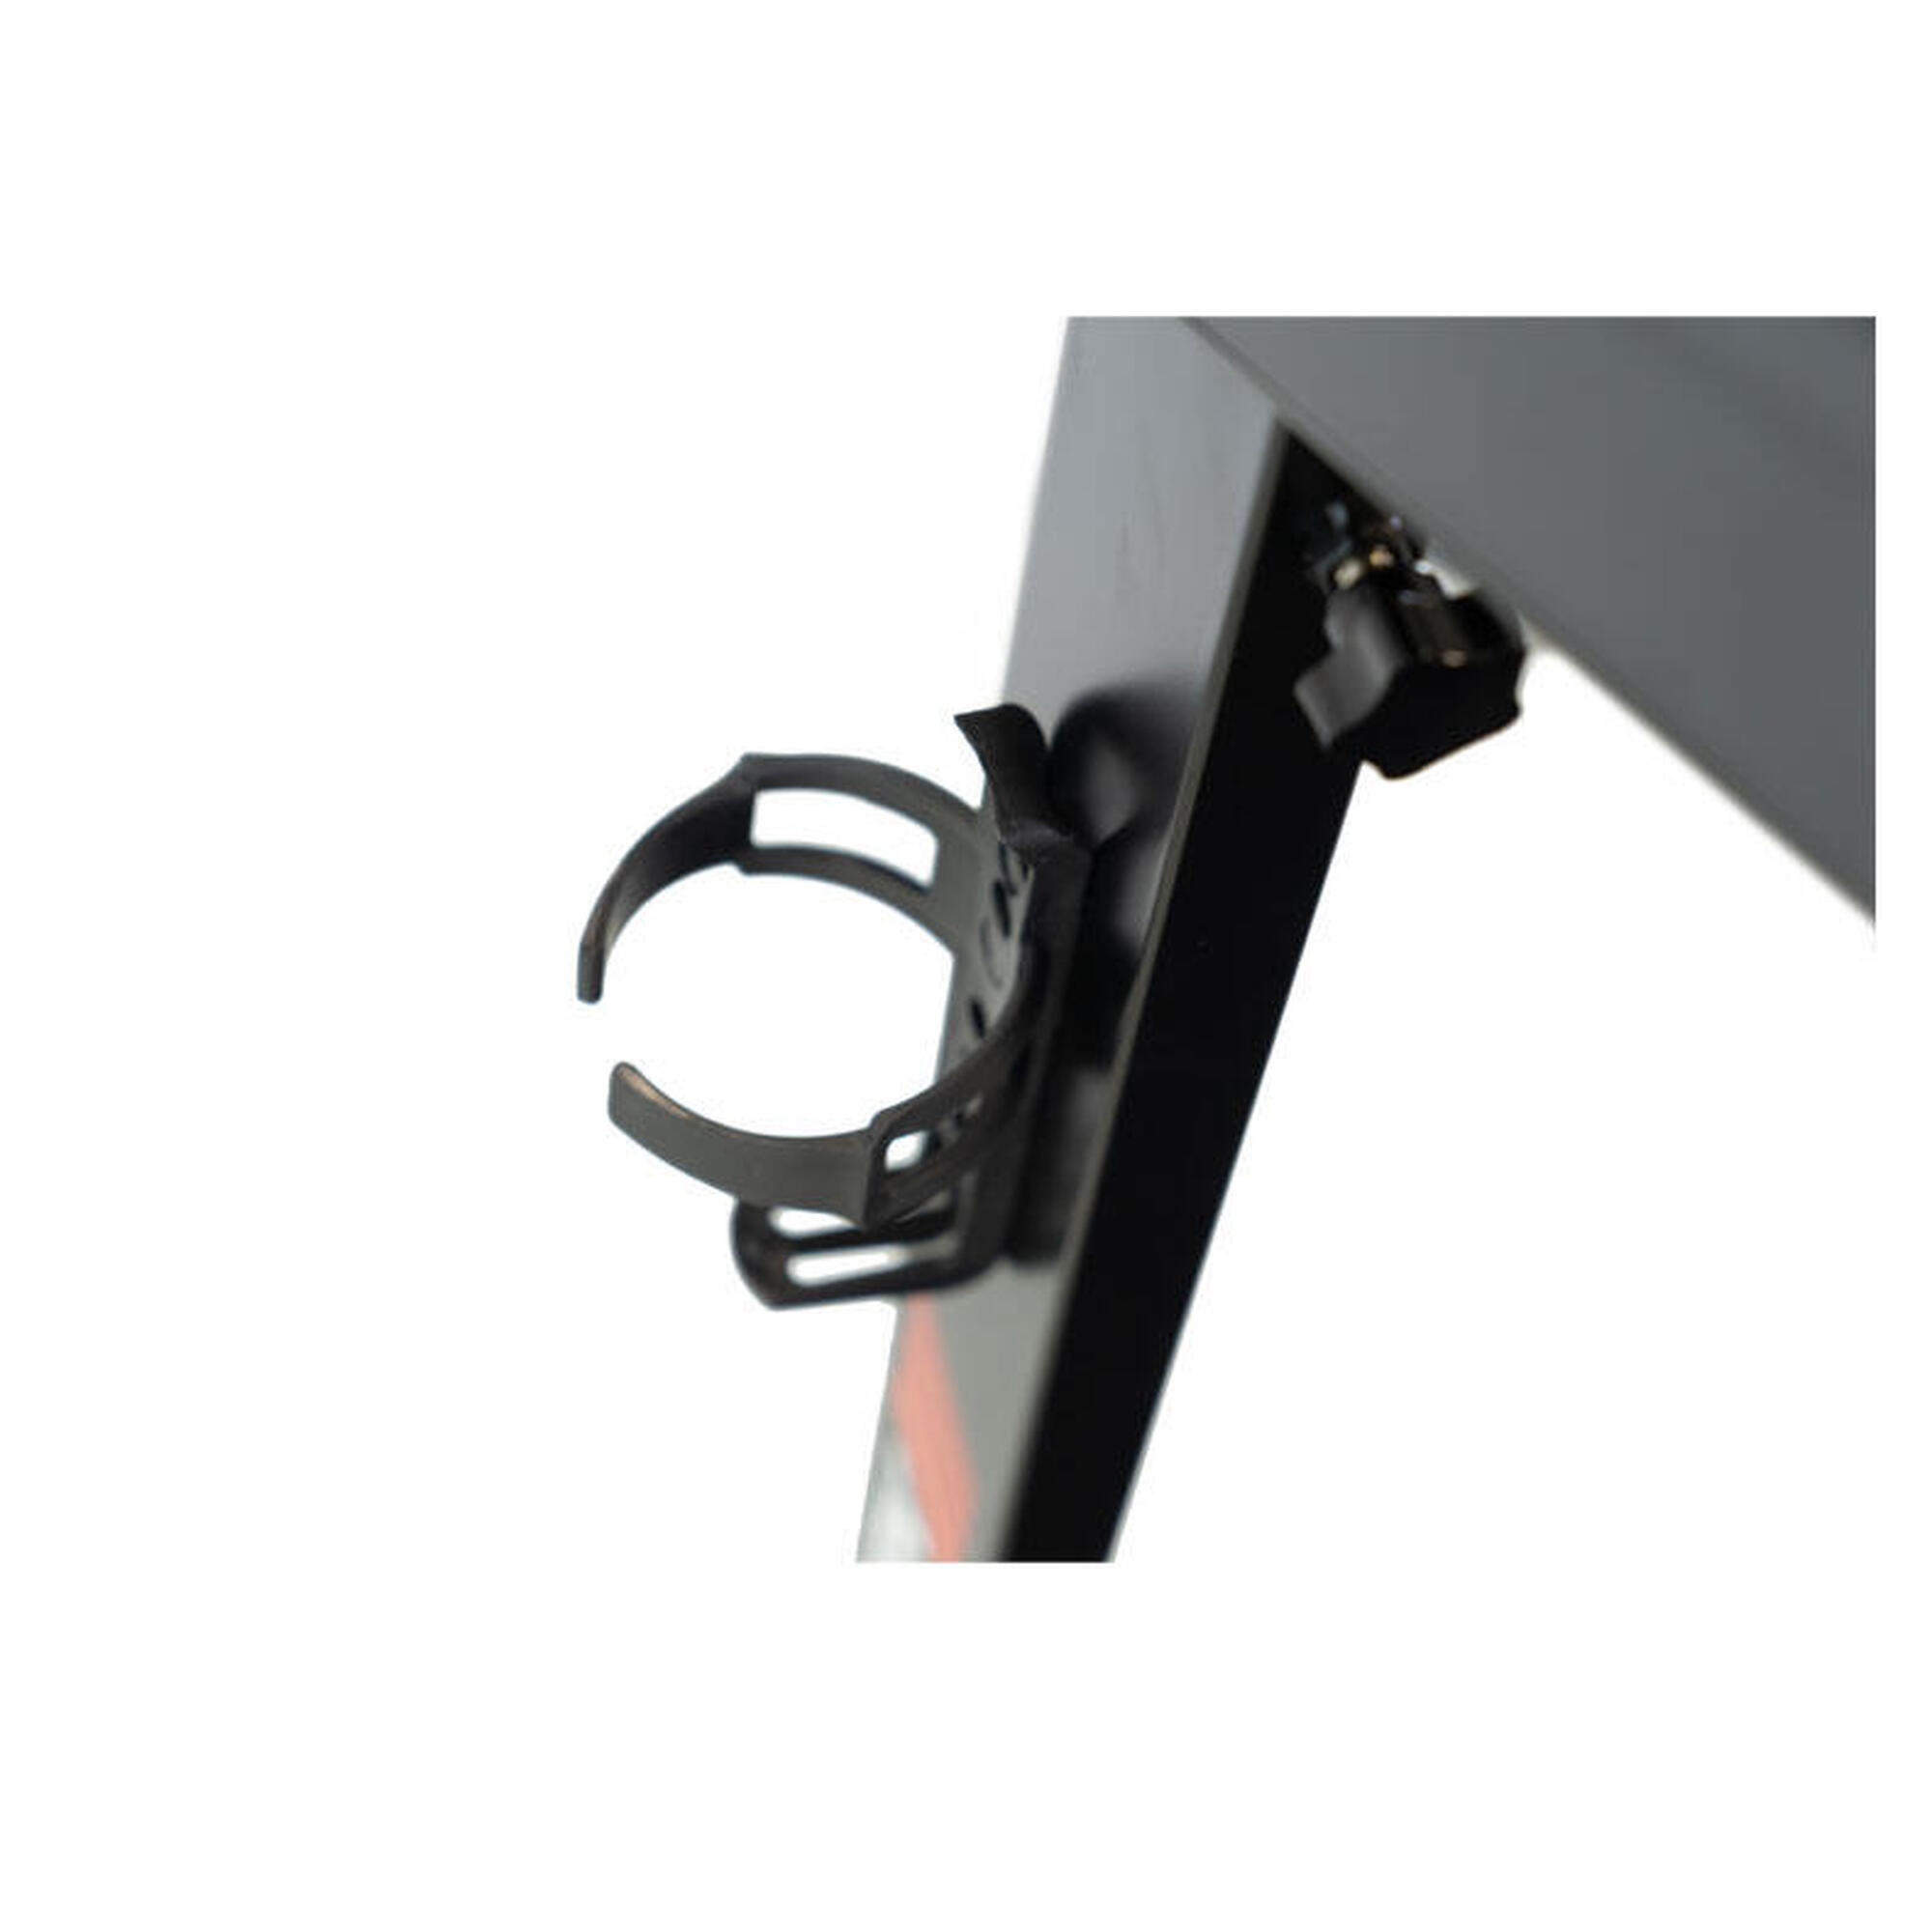 Laufband - New York - Kinomap und Zwift - 16km/h - 125x45cm - LCD